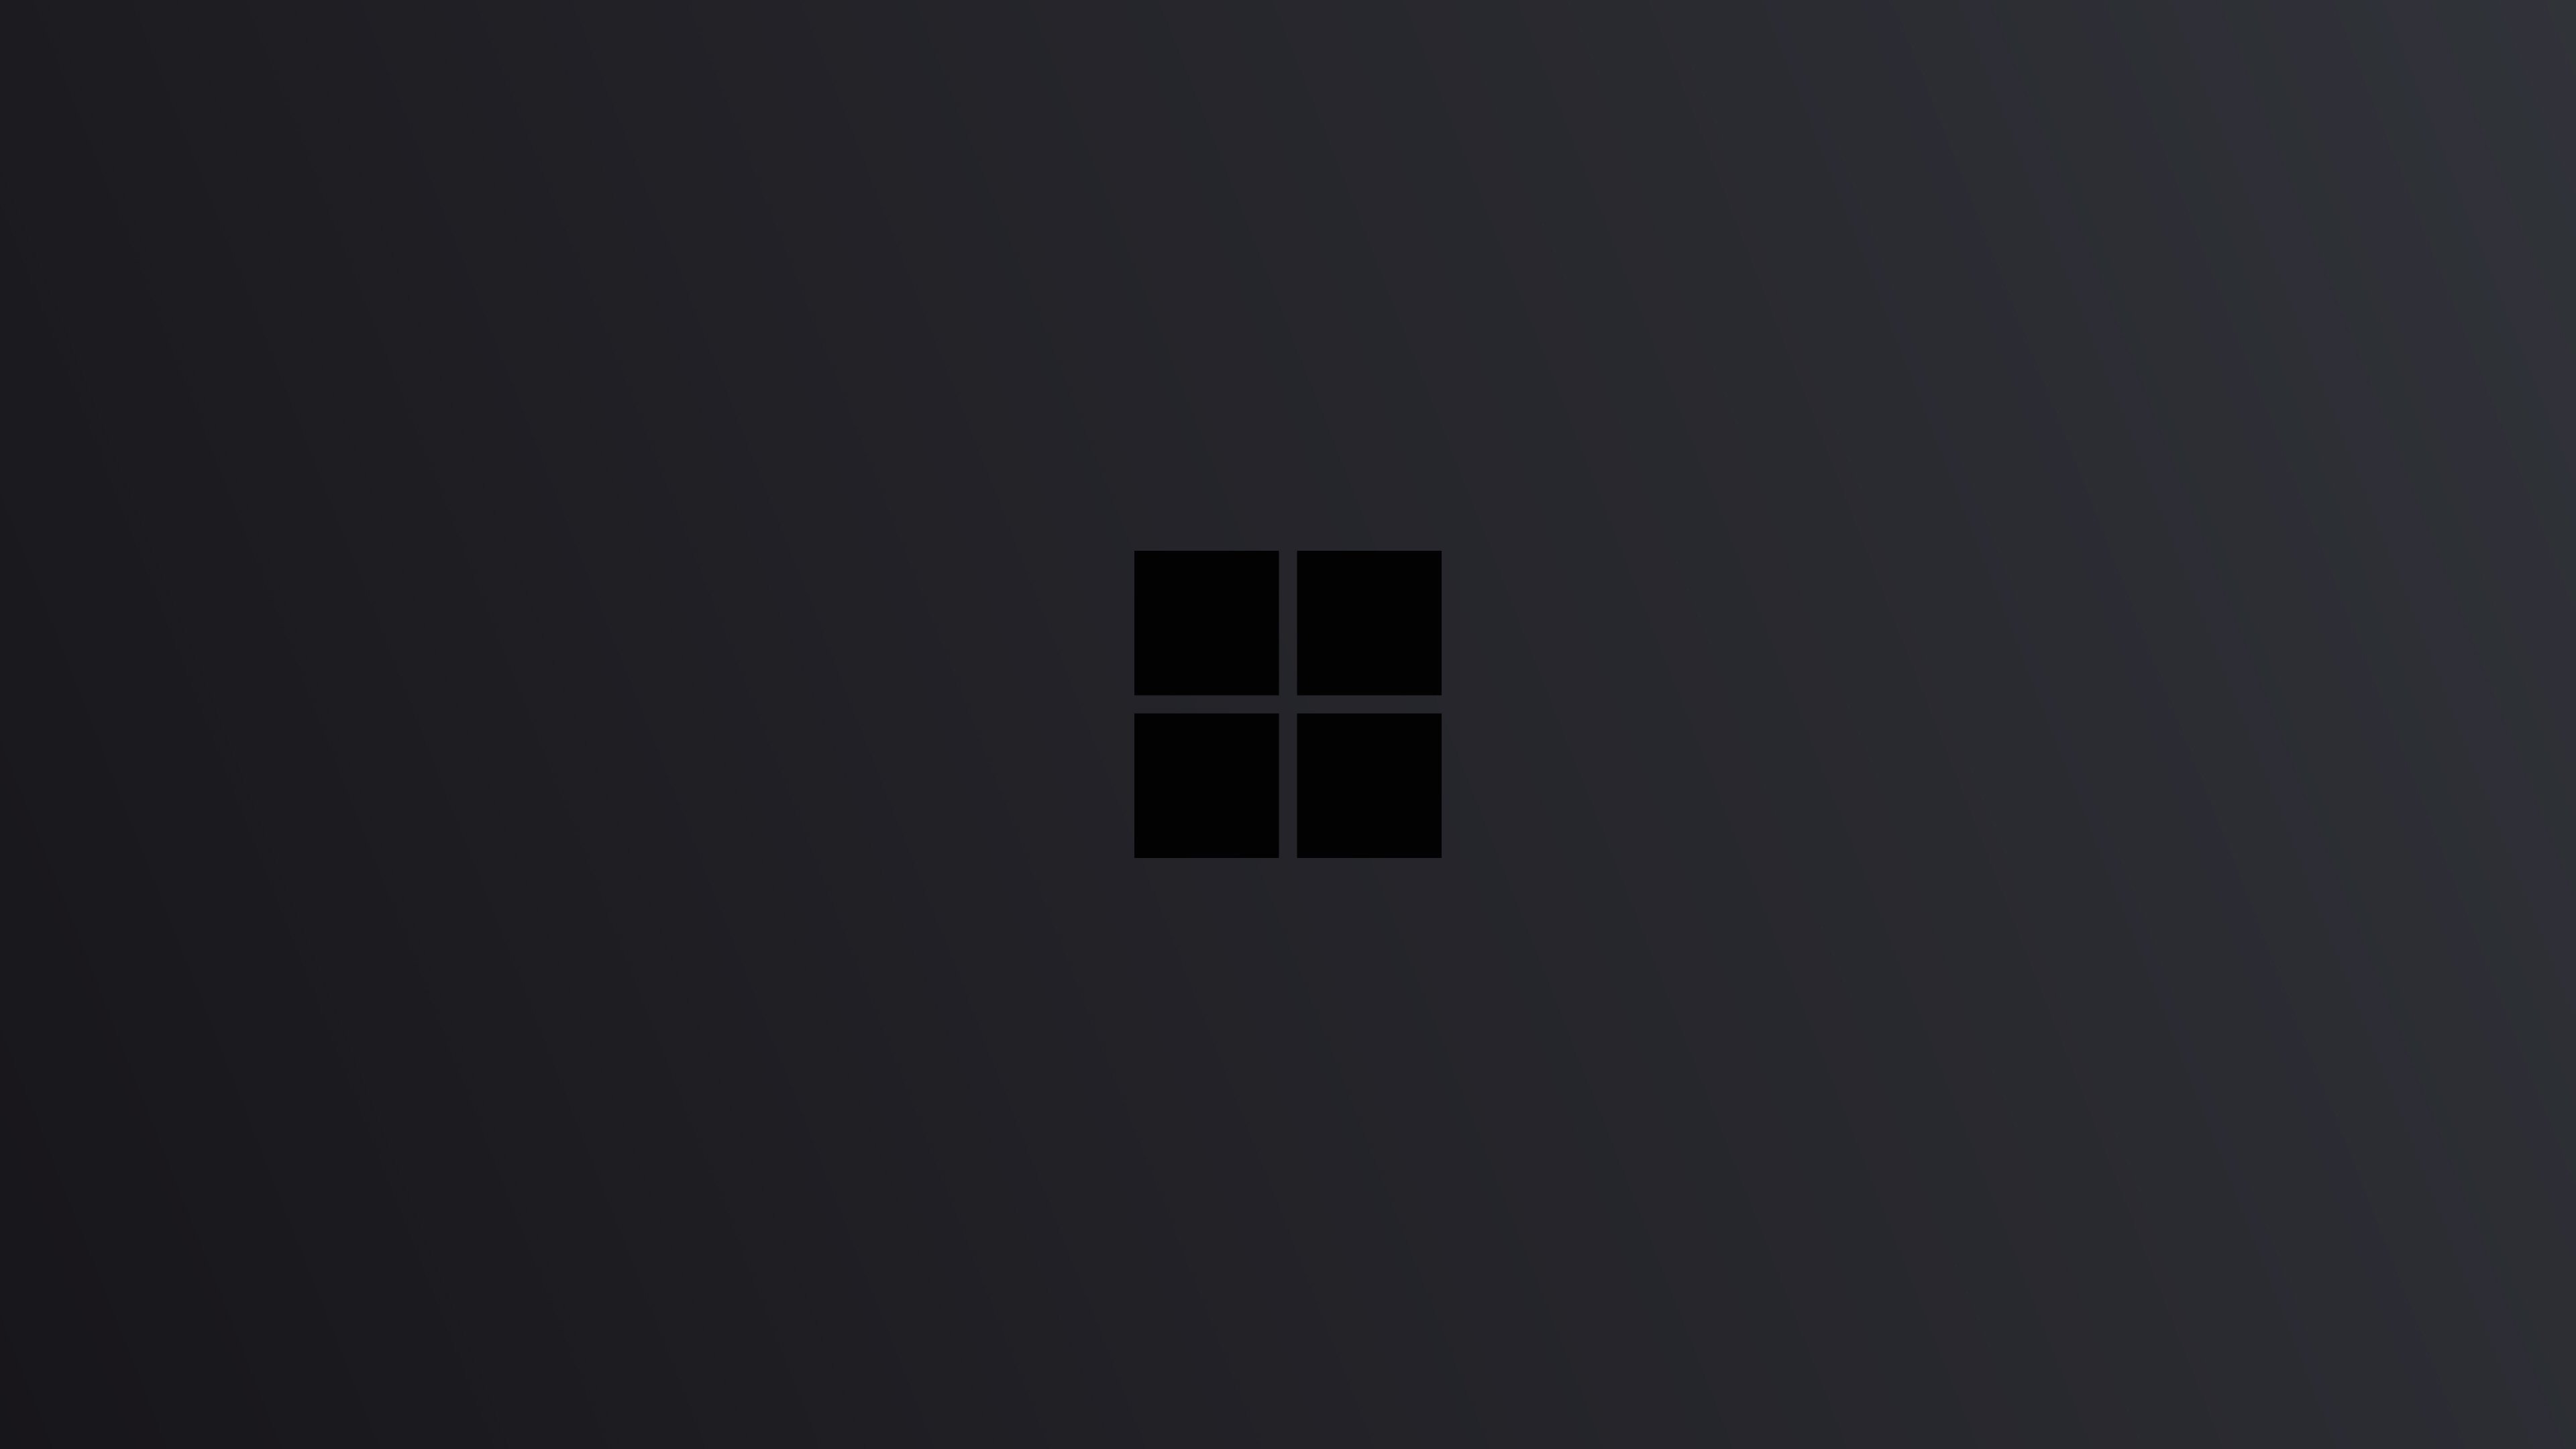 Windows 10 Wallpaper Minimalist